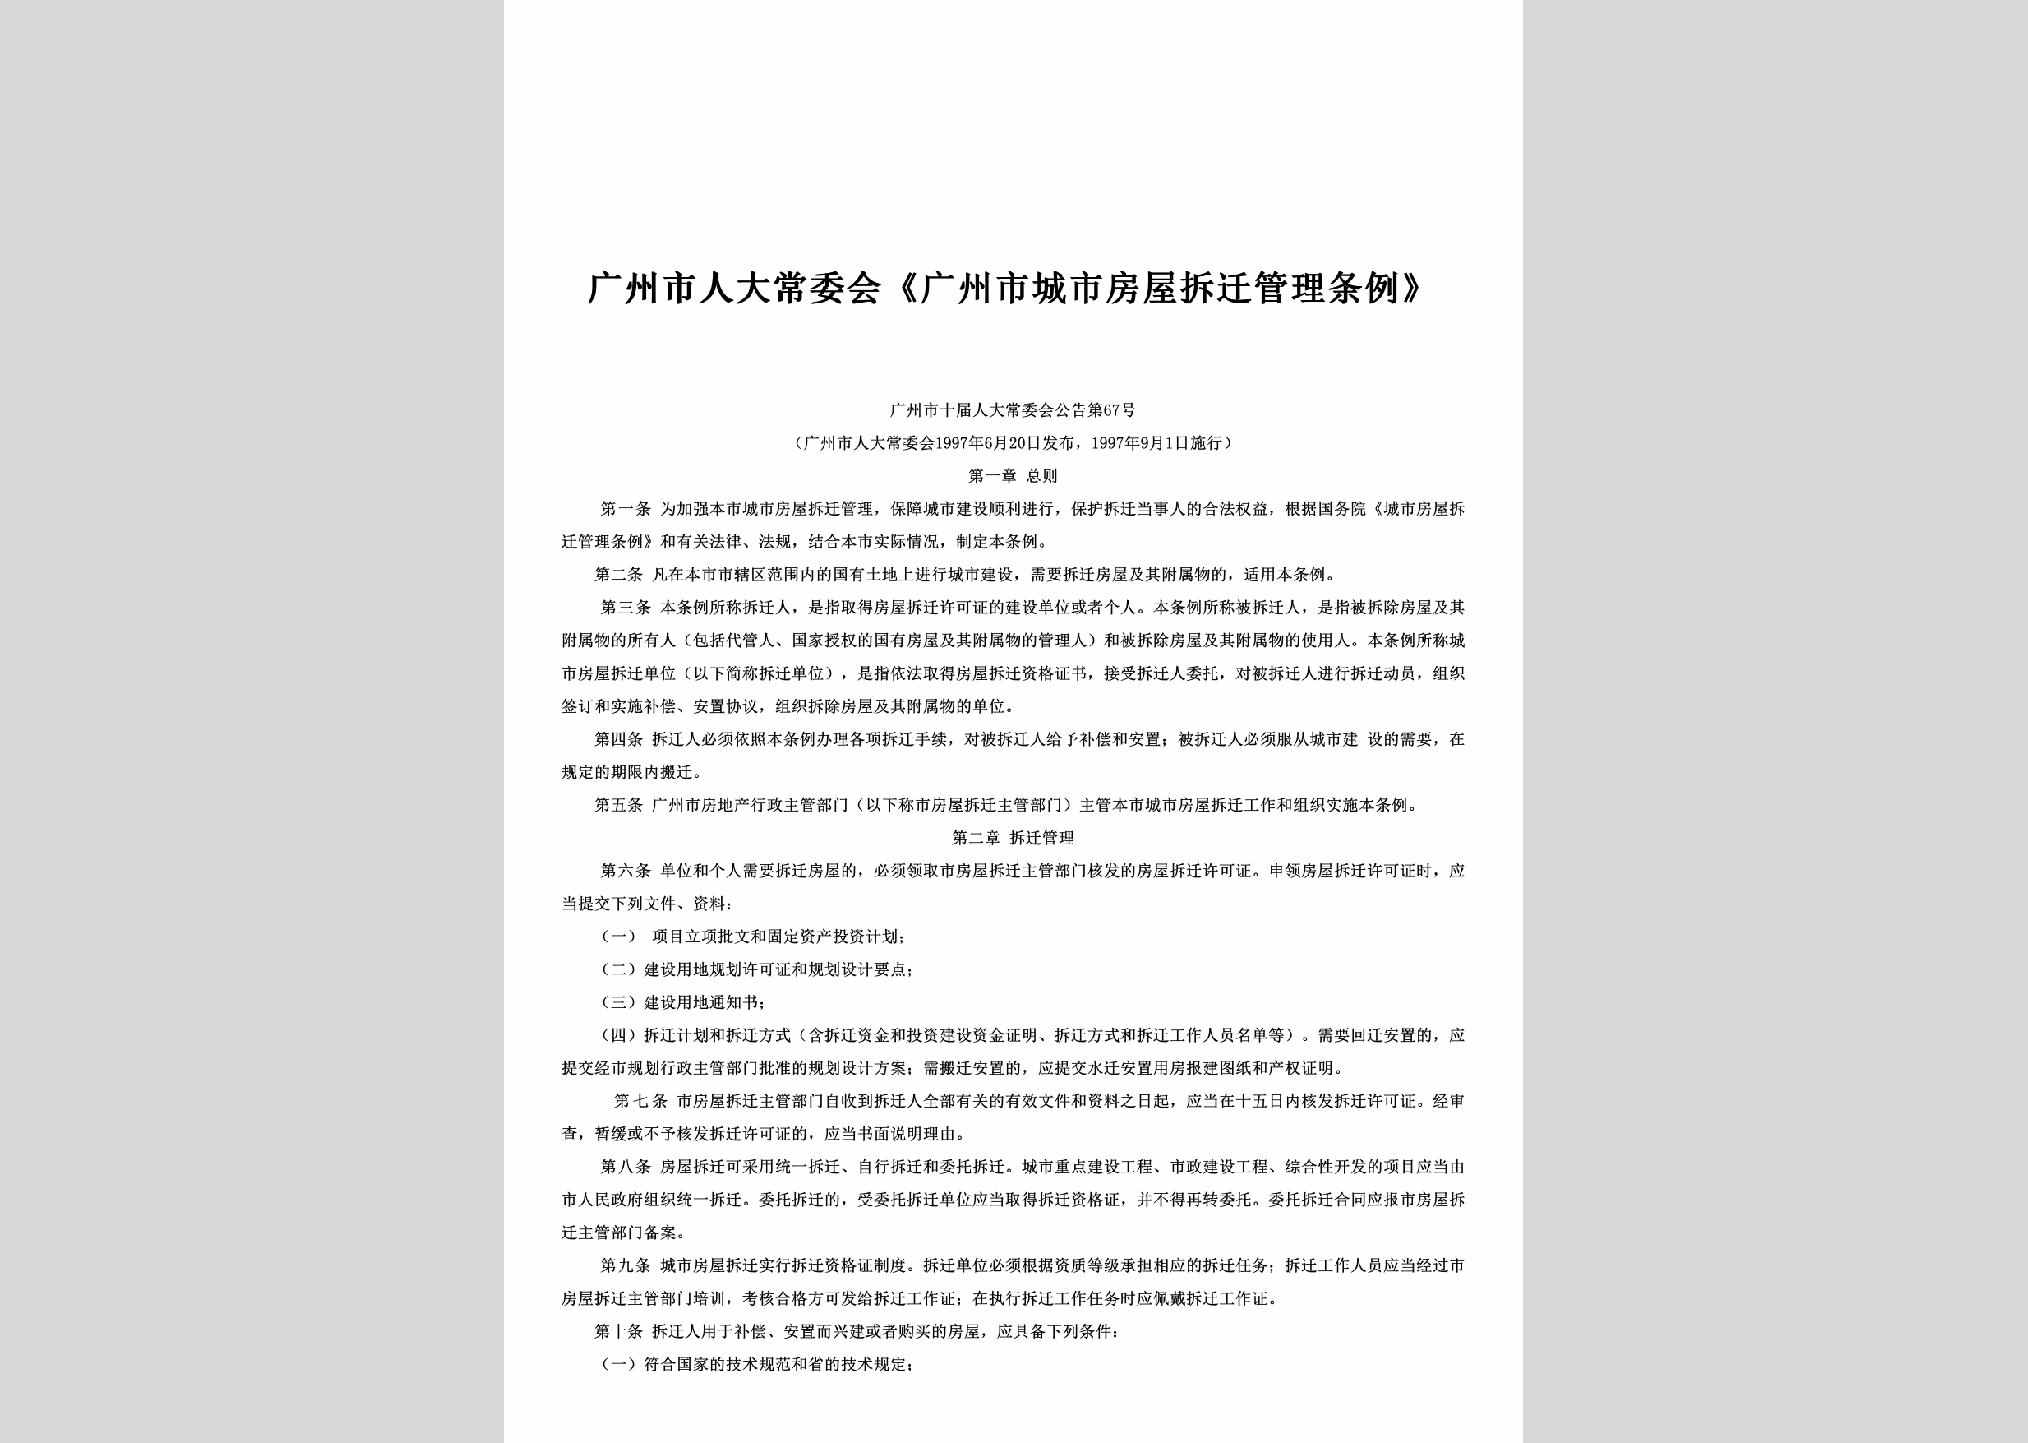 广州市十届人大常委会公告第67号：《广州市城市房屋拆迁管理条例》